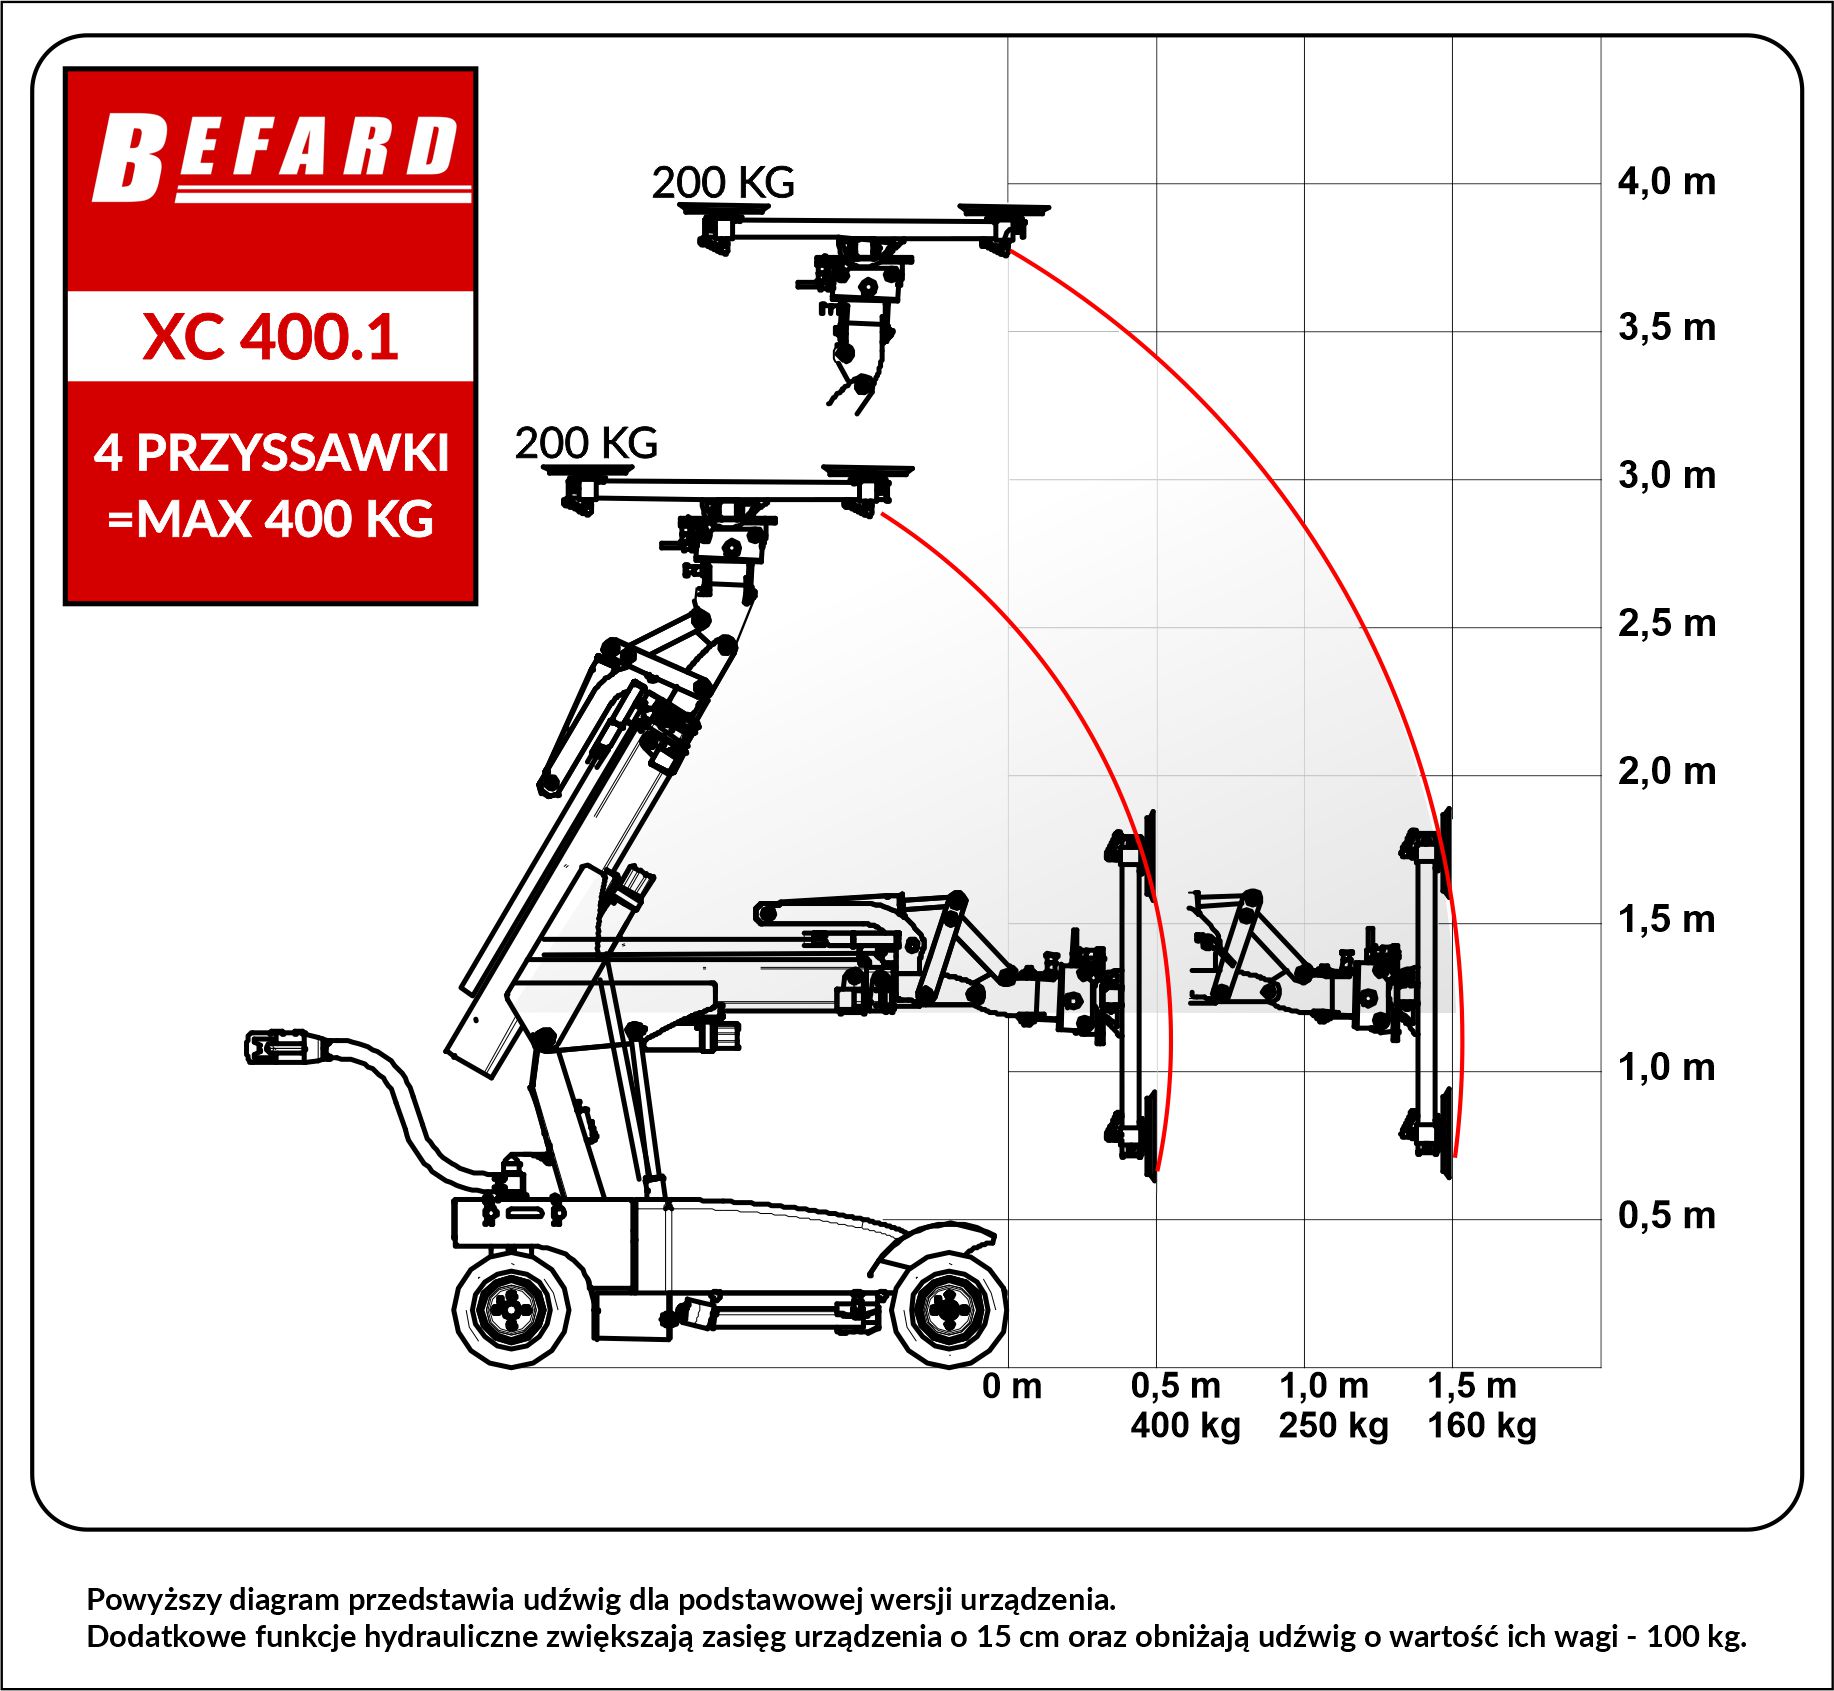 Robot montazowy do okien XC 400.1 diagram udzwigu